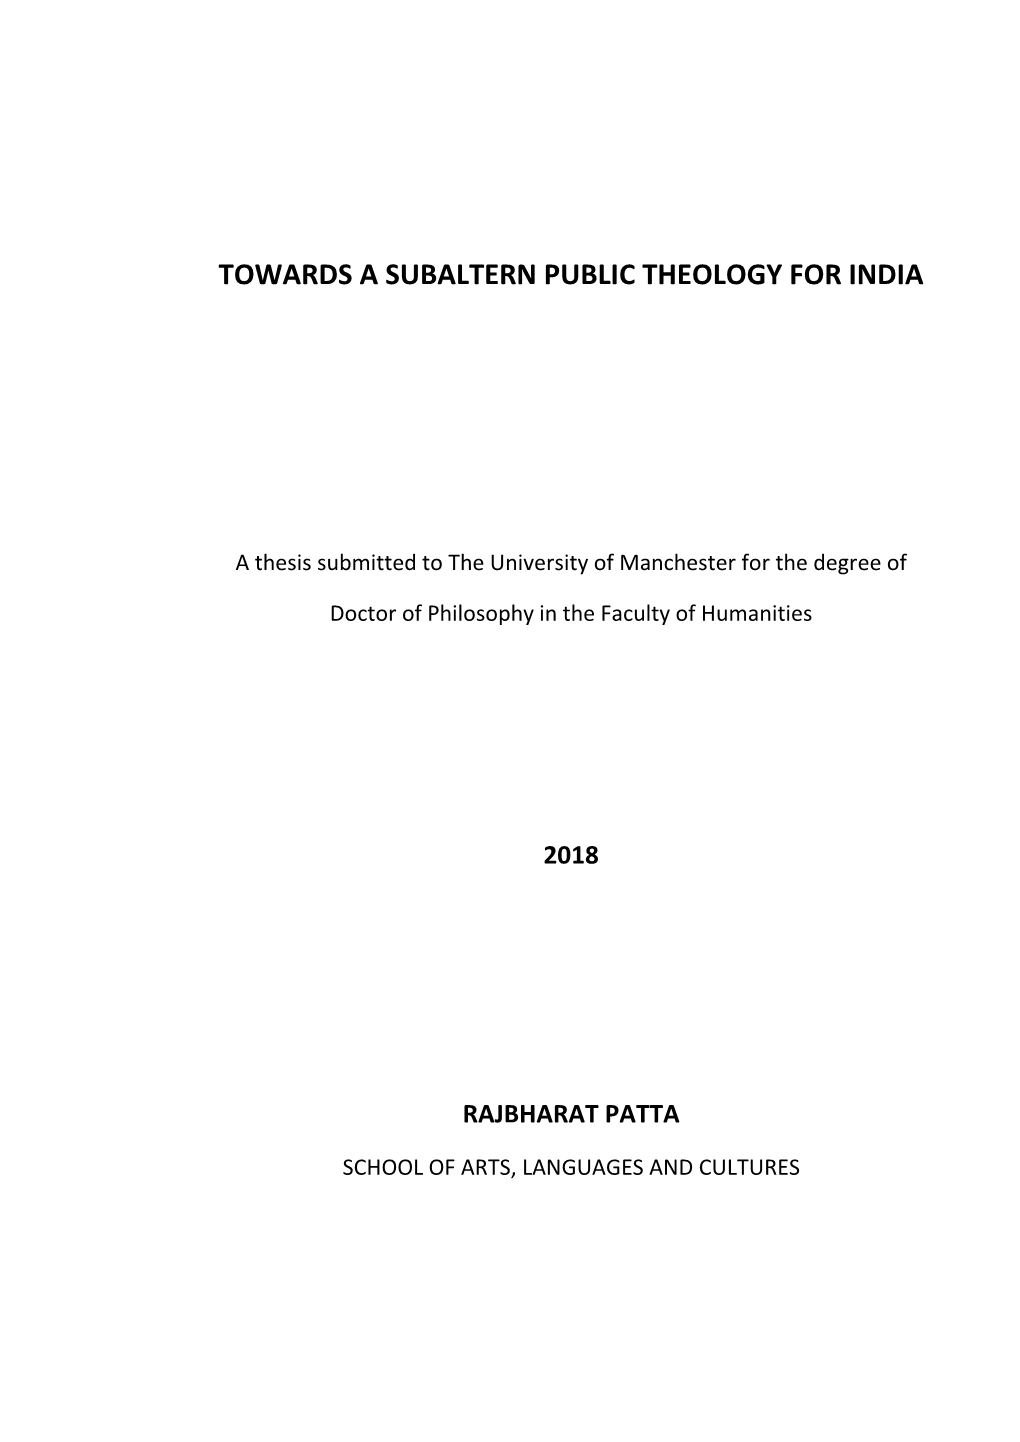 Towards a Subaltern Public Theology for India